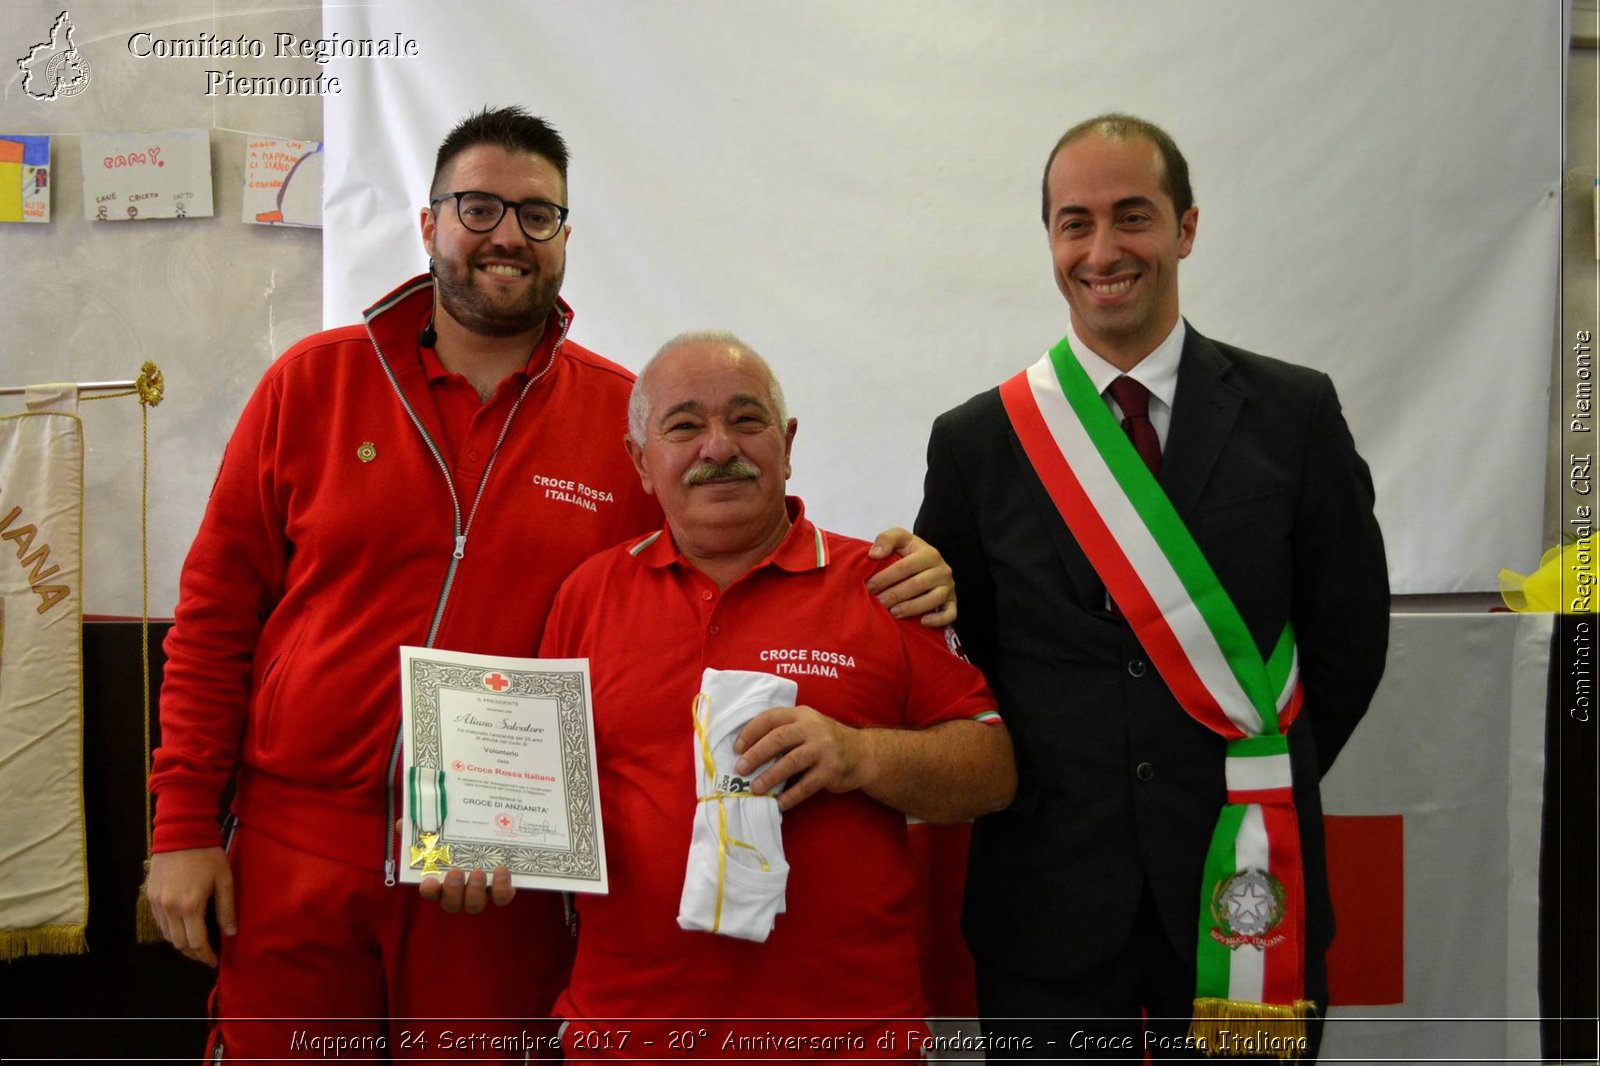 Mappano 24 Settembre 2017 - 20 Anniversario di Fondazione - Croce Rossa Italiana- Comitato Regionale del Piemonte